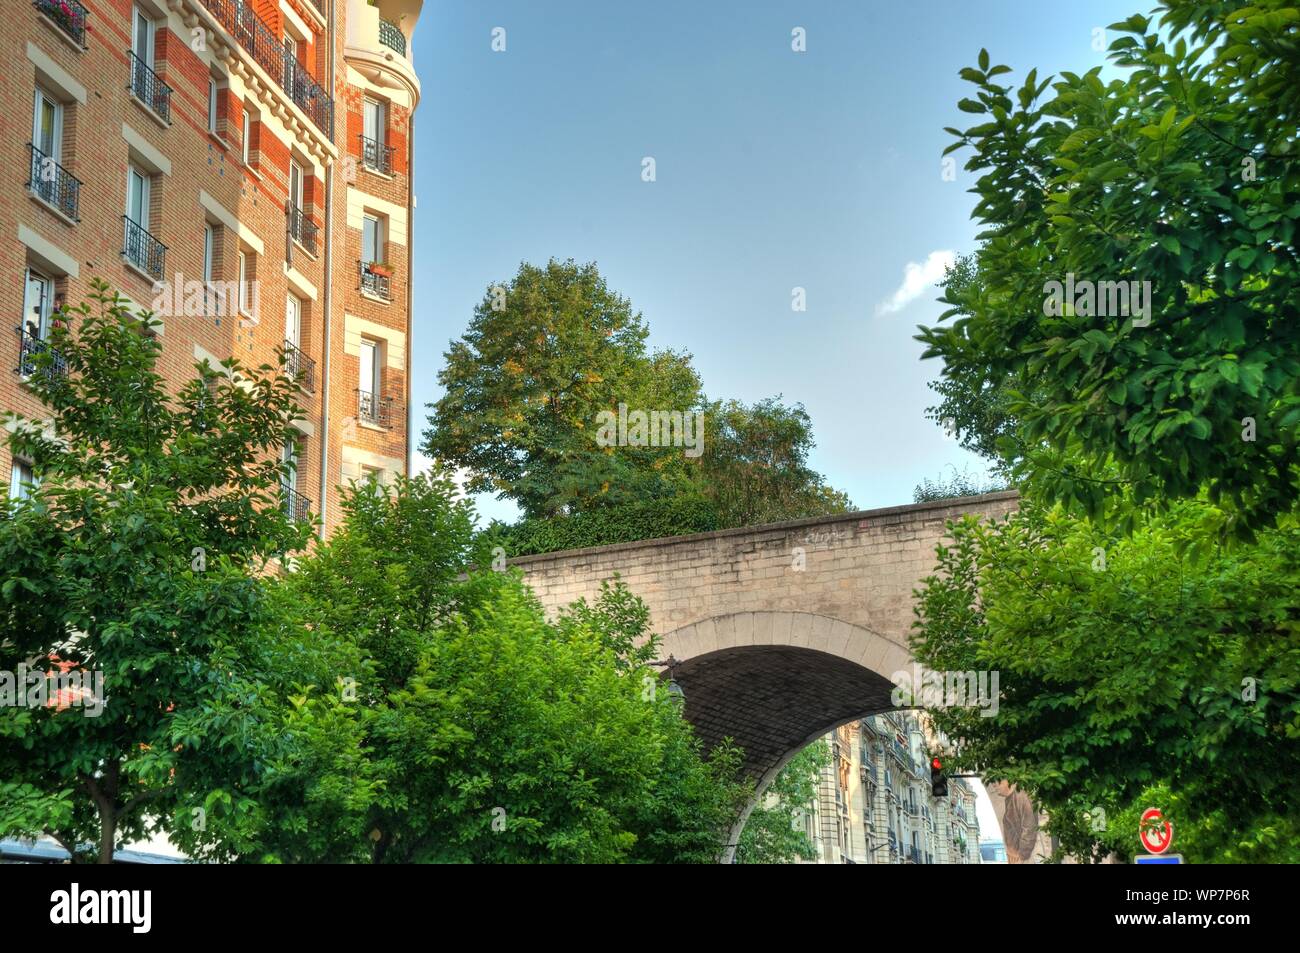 Die Coulée verte René-Dumont ist ein 4,5 Kilometer langer Parkwanderweg, der zunächst entlang der Avenue Daumesnil im 12. Arrondissement von Paris füh Stock Photo